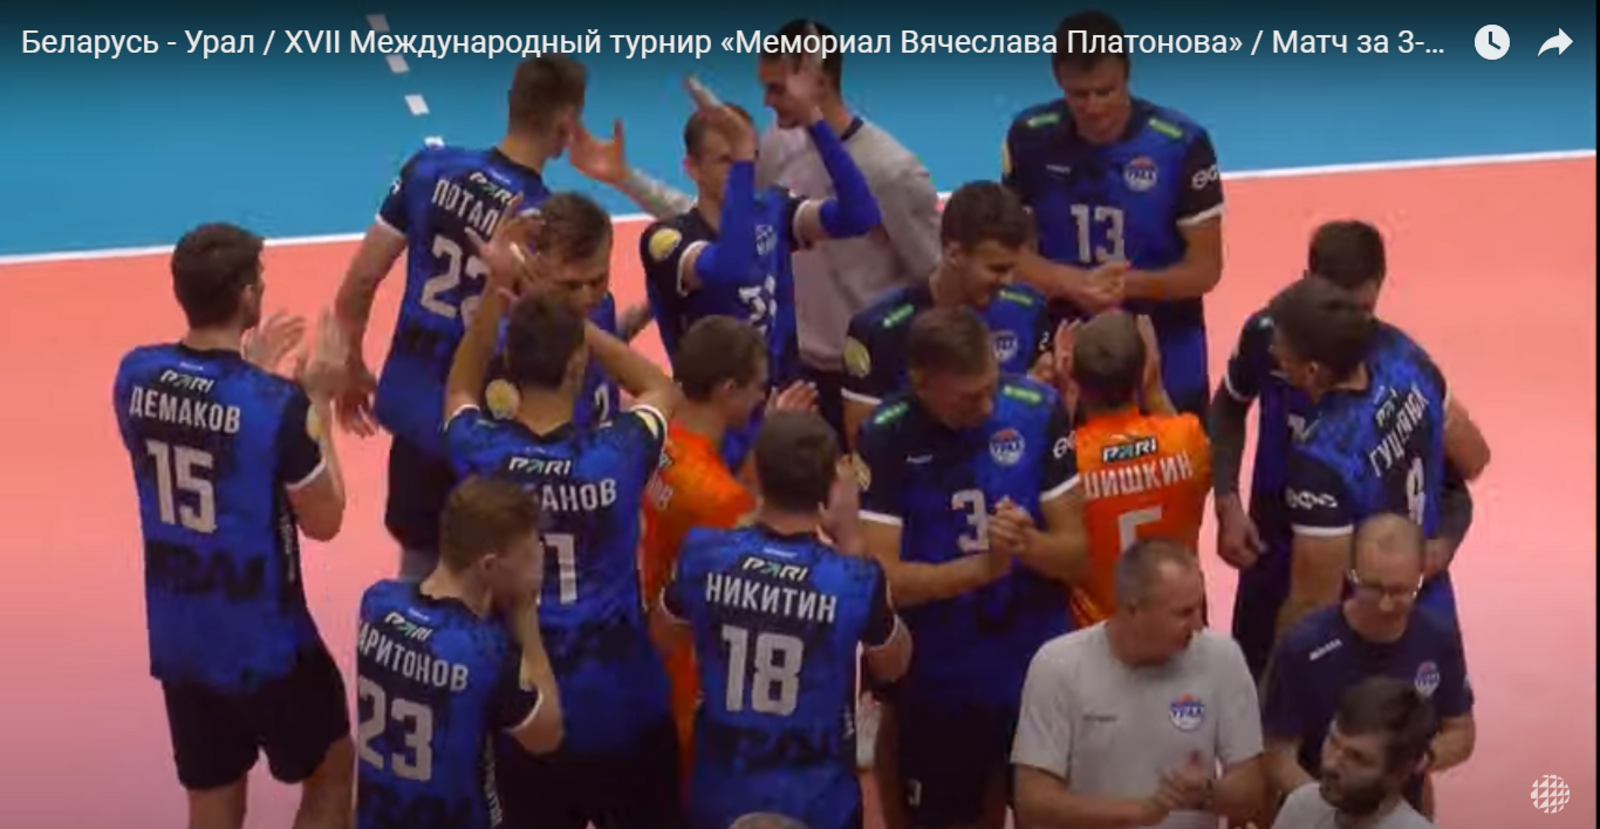 Волейболисты «Урала» взяли бронзу на мемориале Платонова в Санкт-Петербурге